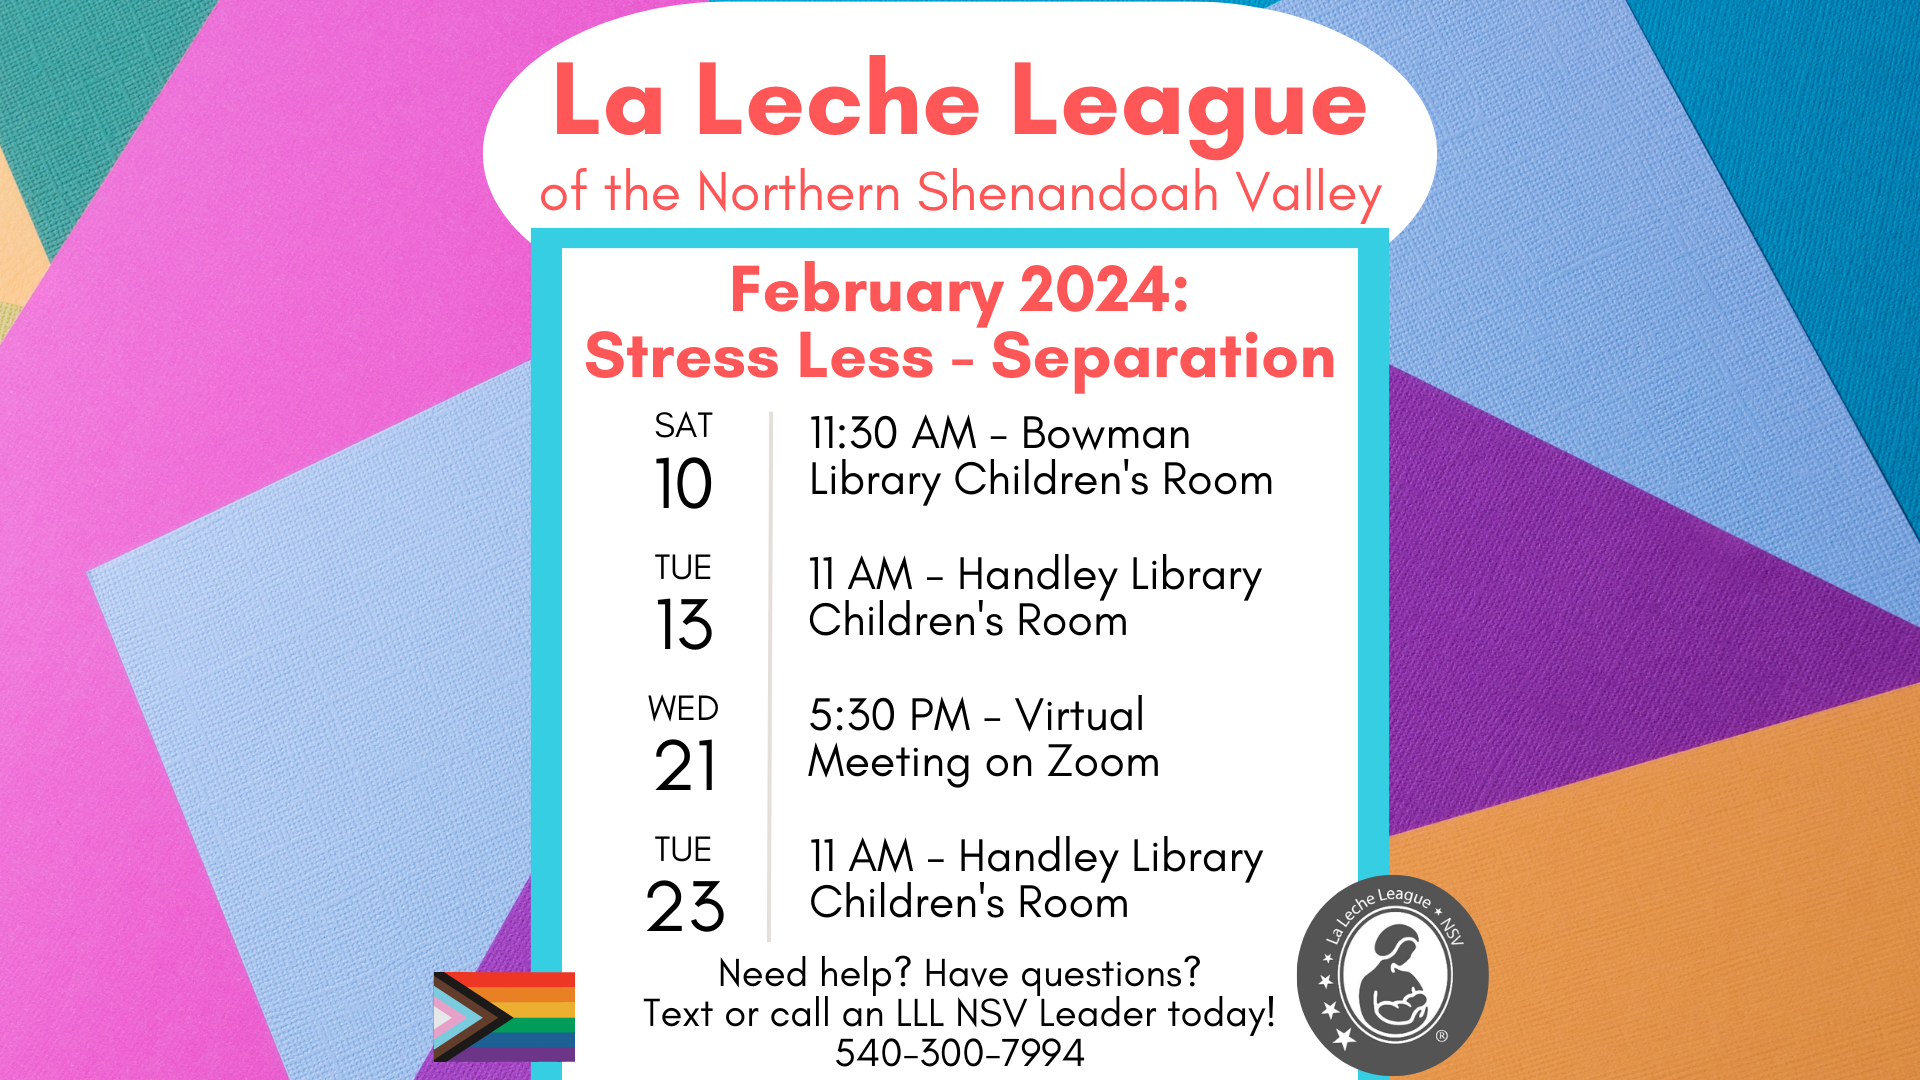 La Leche Schedule for February